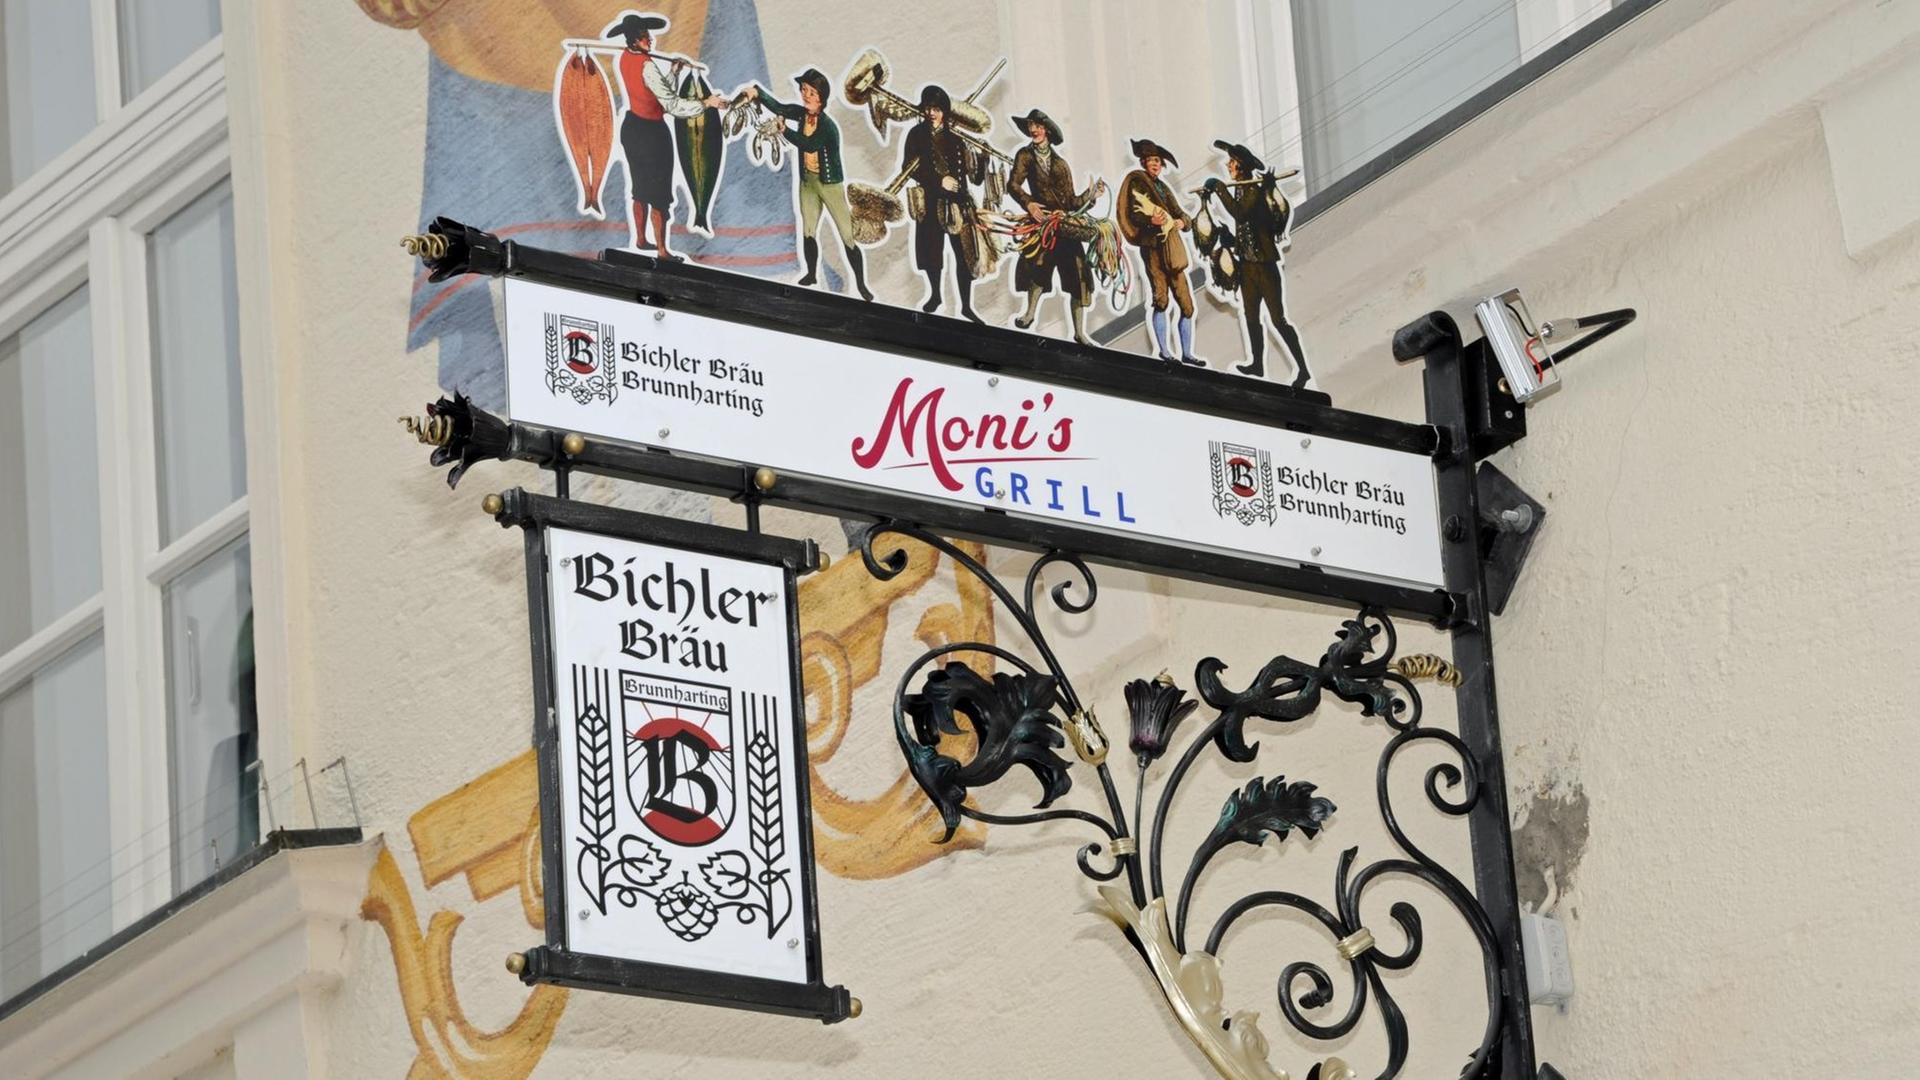 Das Hinweisschild "Moni's Grill" bei einem Pressetermin in München. In sieben 30-minütigen Folgen trifft fiktionale Erzählung auf Real-Talk. Überraschungsgäste aus Film, Kultur und Unterhaltung schauen in "Moni's Grill" vorbei.